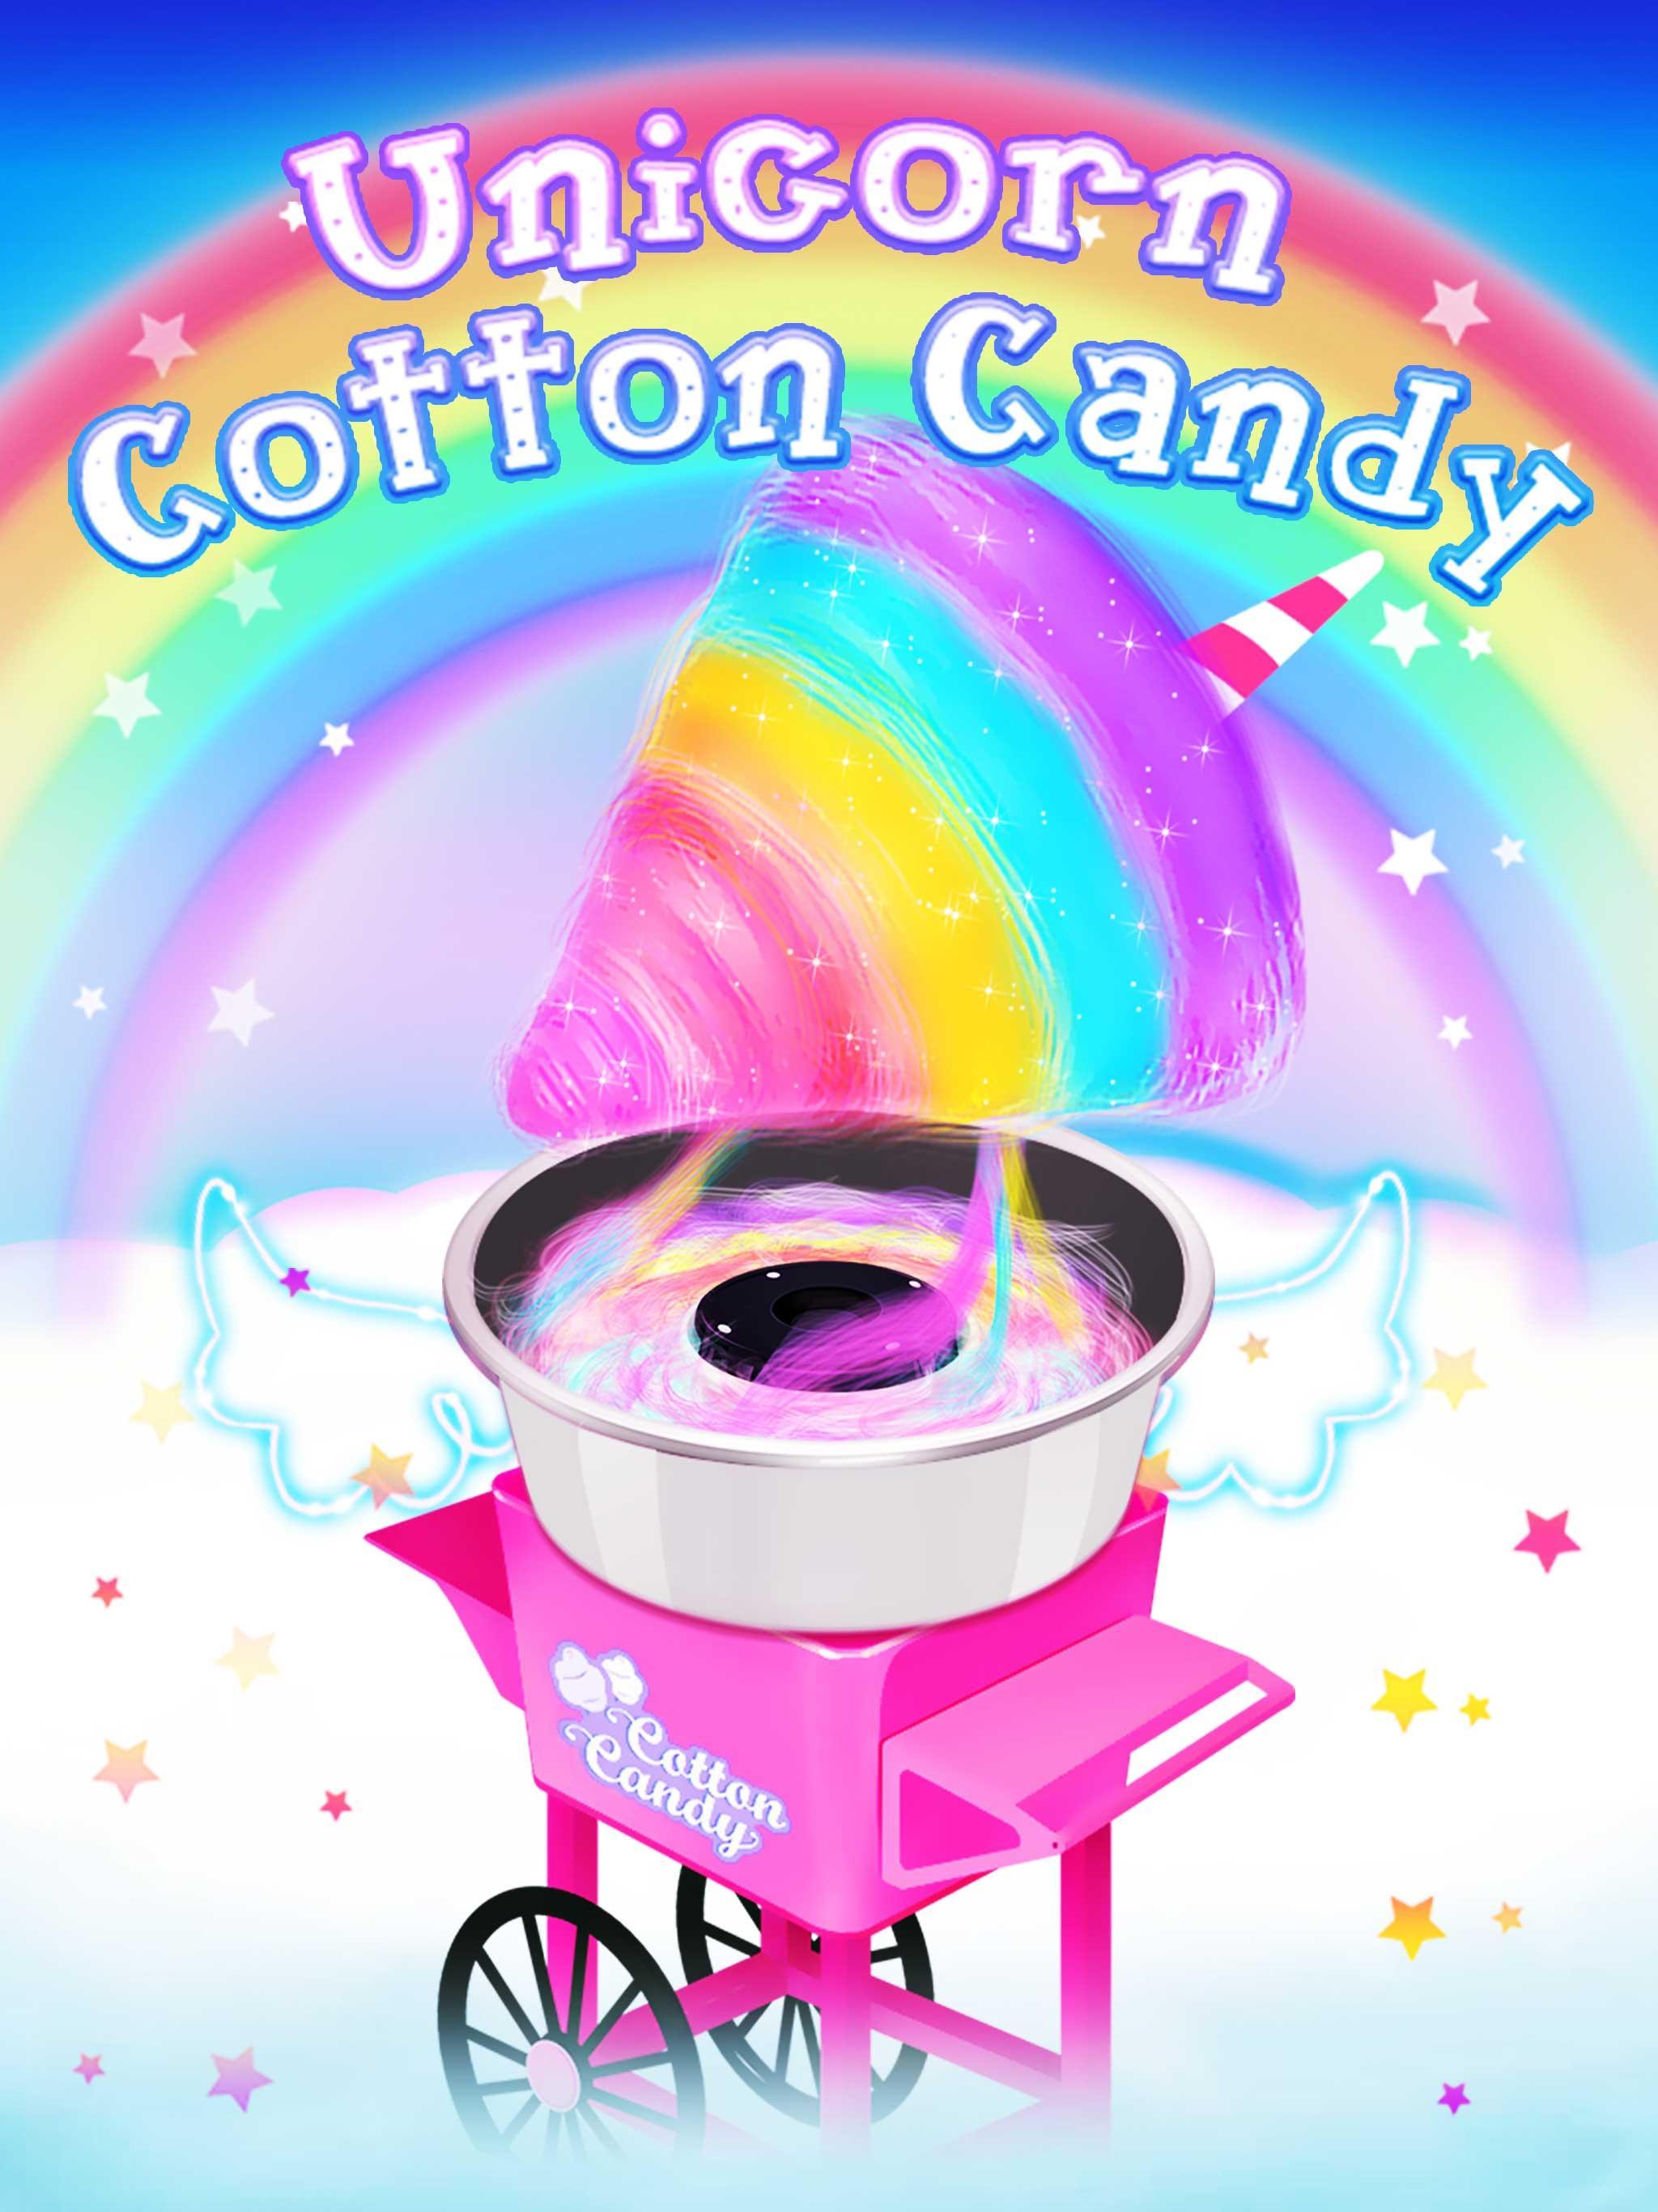 Screenshot 1 of Unicorn Cotton Candy - မိန်းကလေးများအတွက် ဟင်းချက်ဂိမ်းများ 